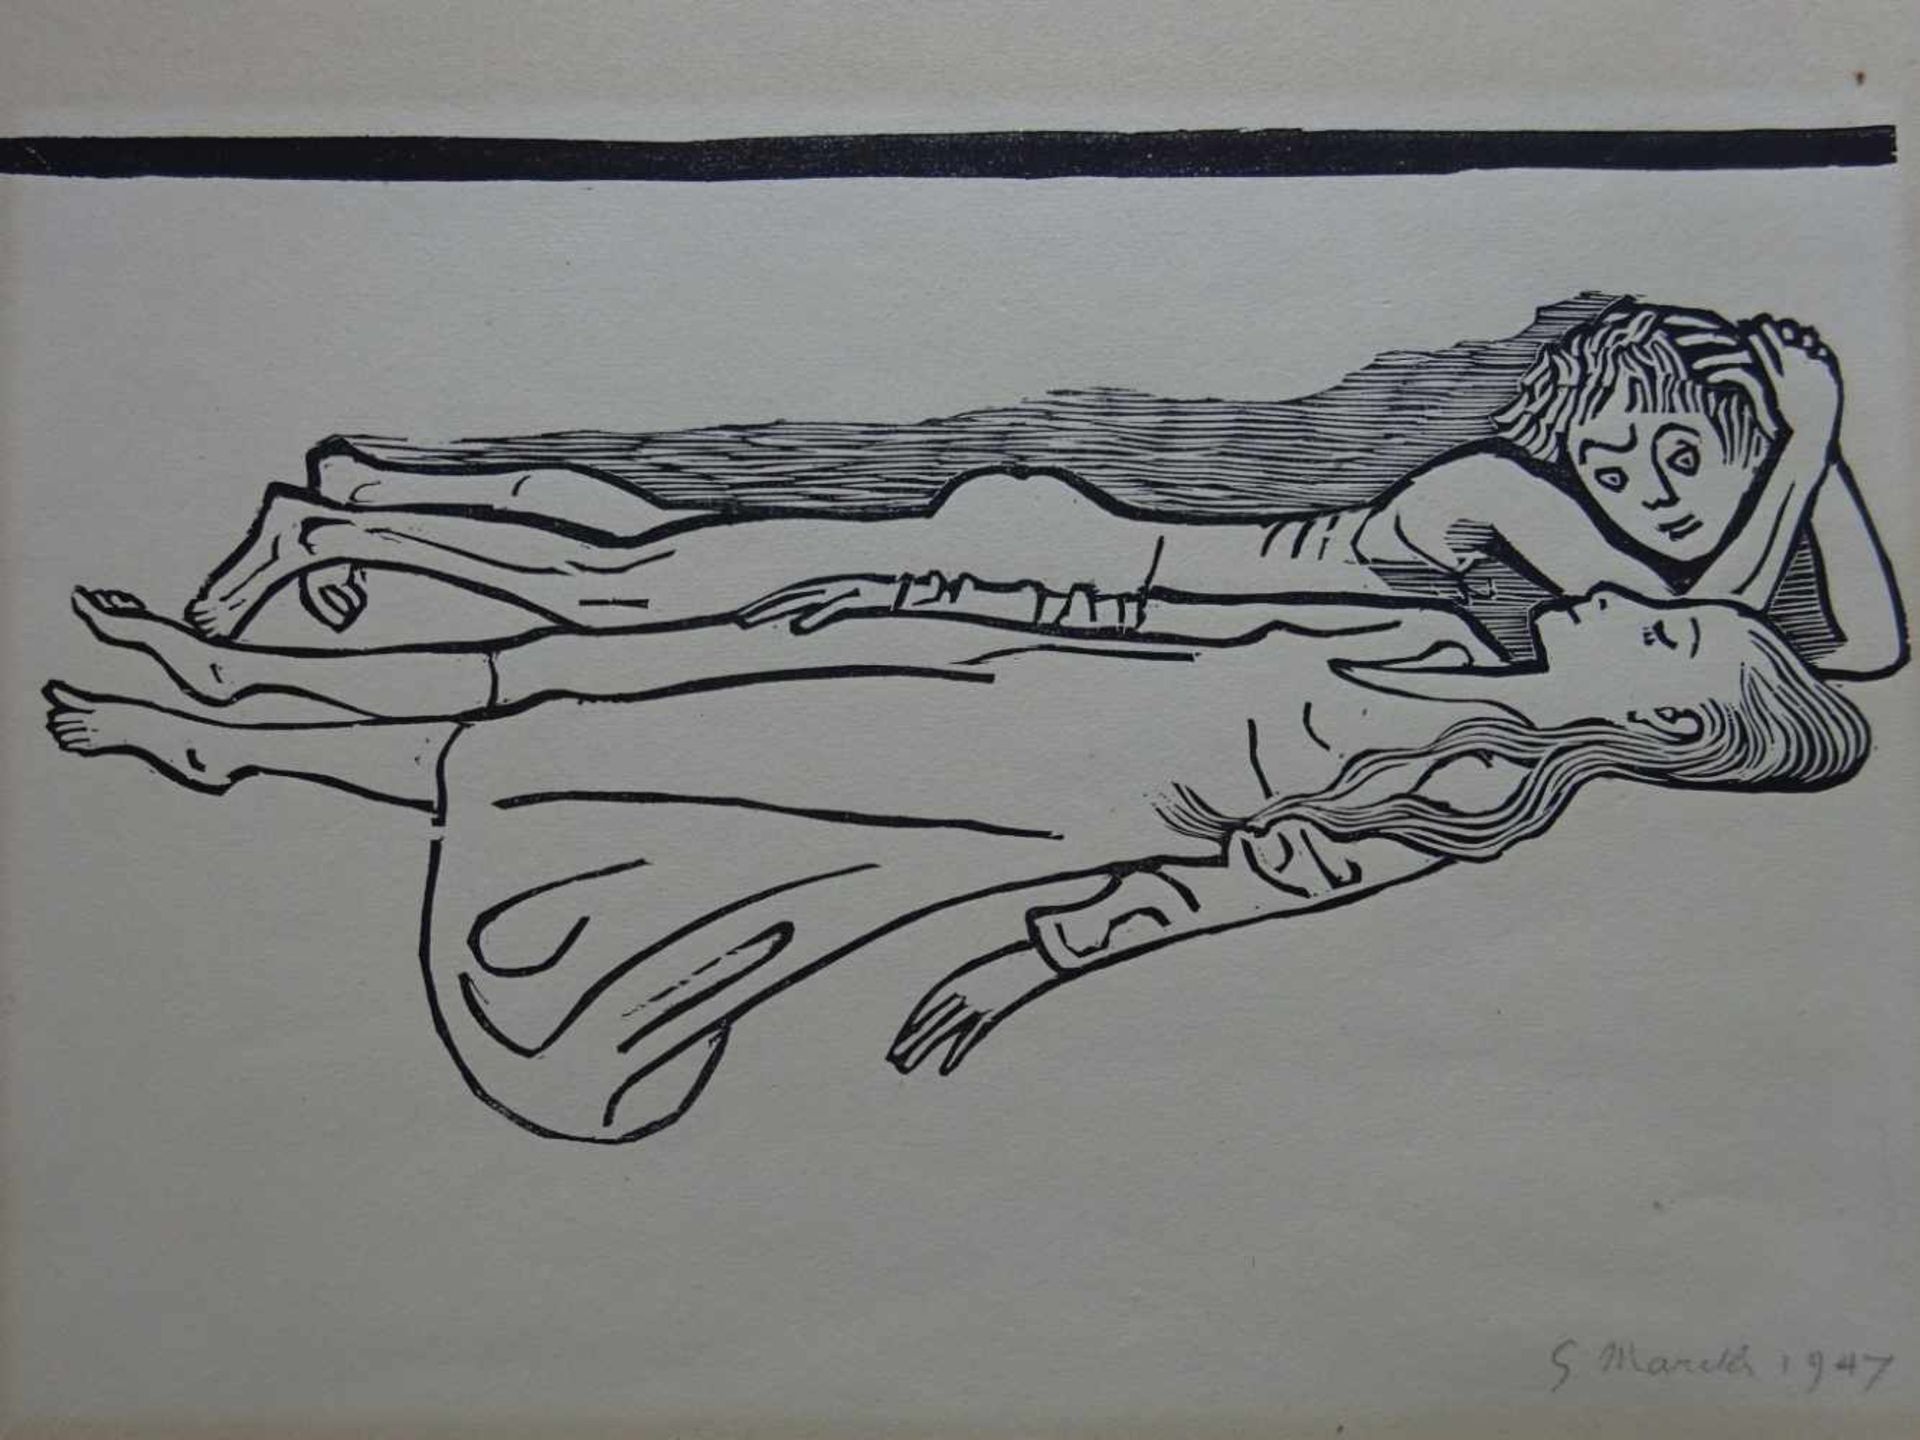 Marcks, Gerhard(Berlin 1889 - 1981 Köln). Orpheus. Holzschnitt auf Bütten. 1947. Signiert, datiert - Bild 3 aus 6